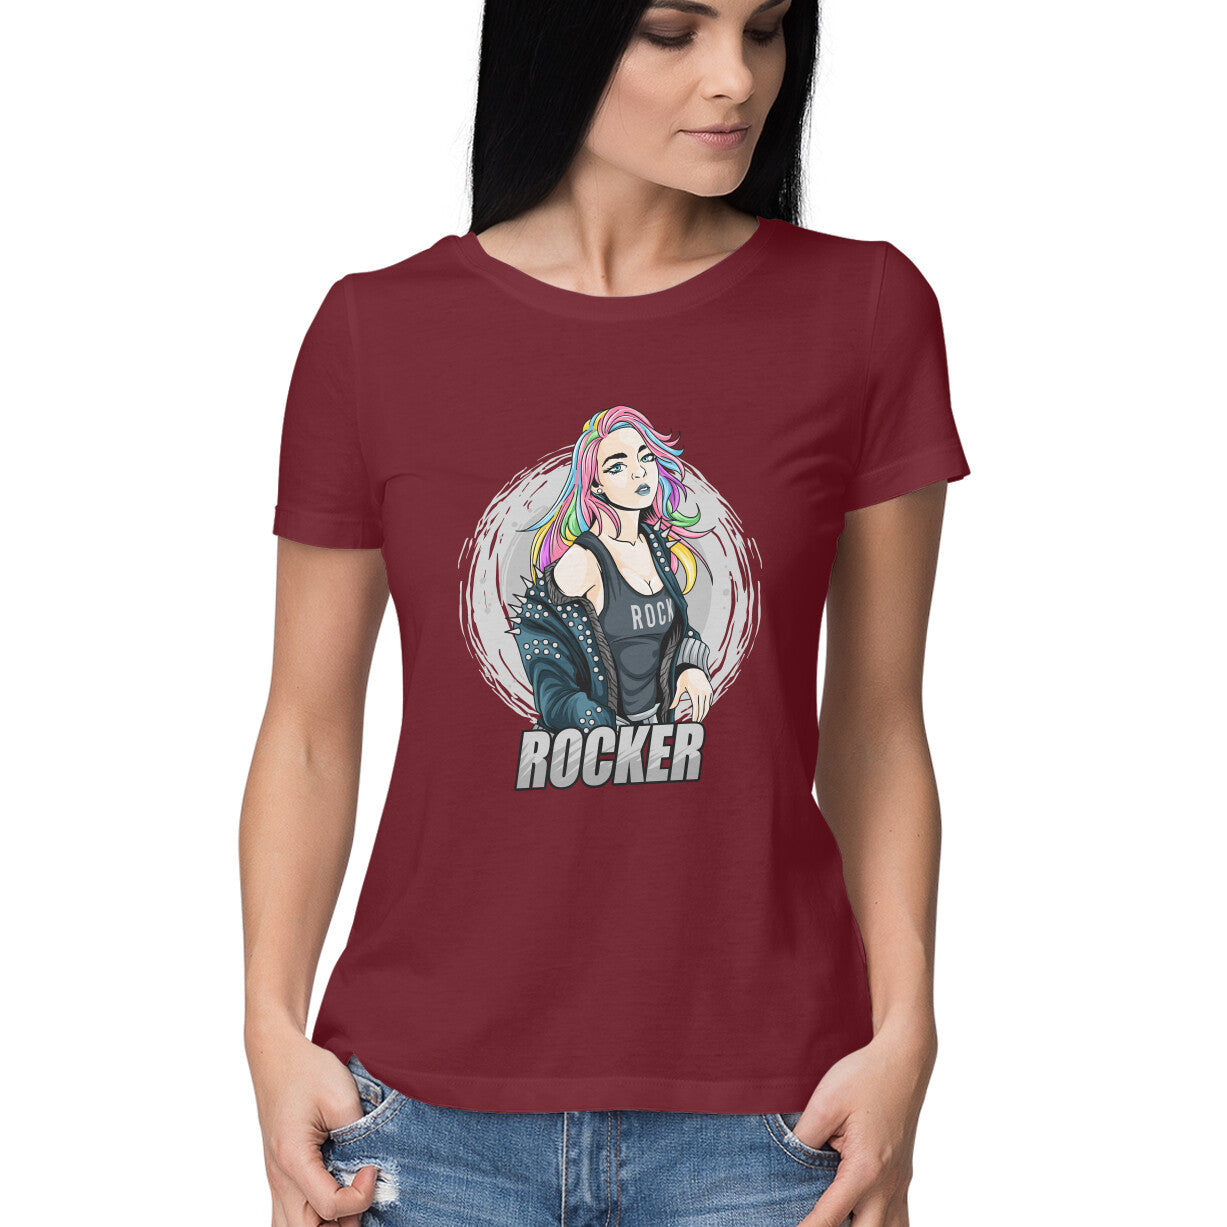 Rocker Girl T-Shirt